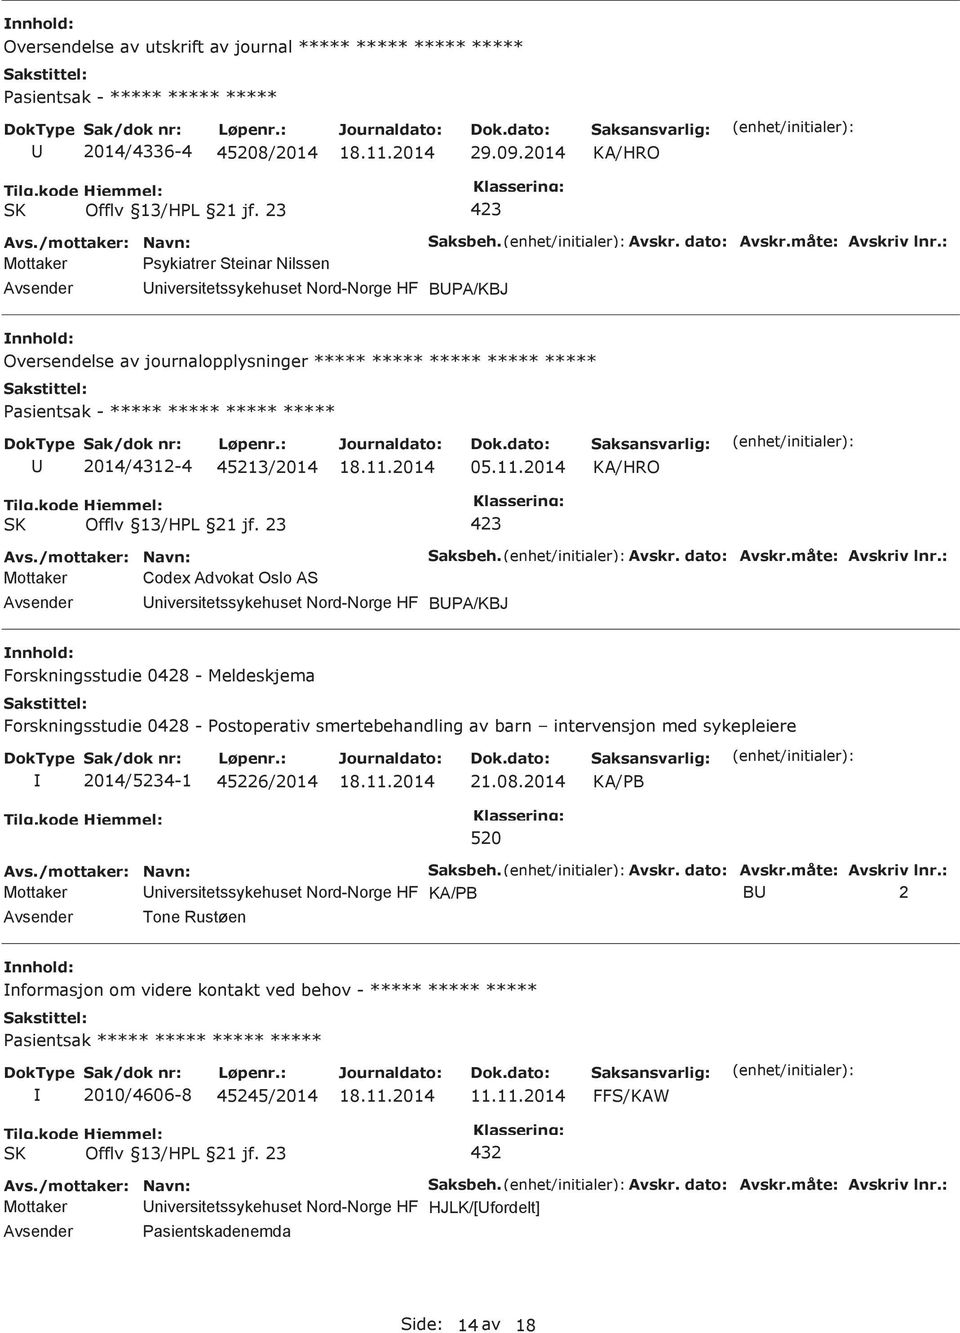 2014 Mottaker Codex Advokat Oslo AS niversitetssykehuset Nord-Norge HF BA/KBJ Forskningsstudie 0428 - Meldeskjema Forskningsstudie 0428 - ostoperativ smertebehandling av barn intervensjon med